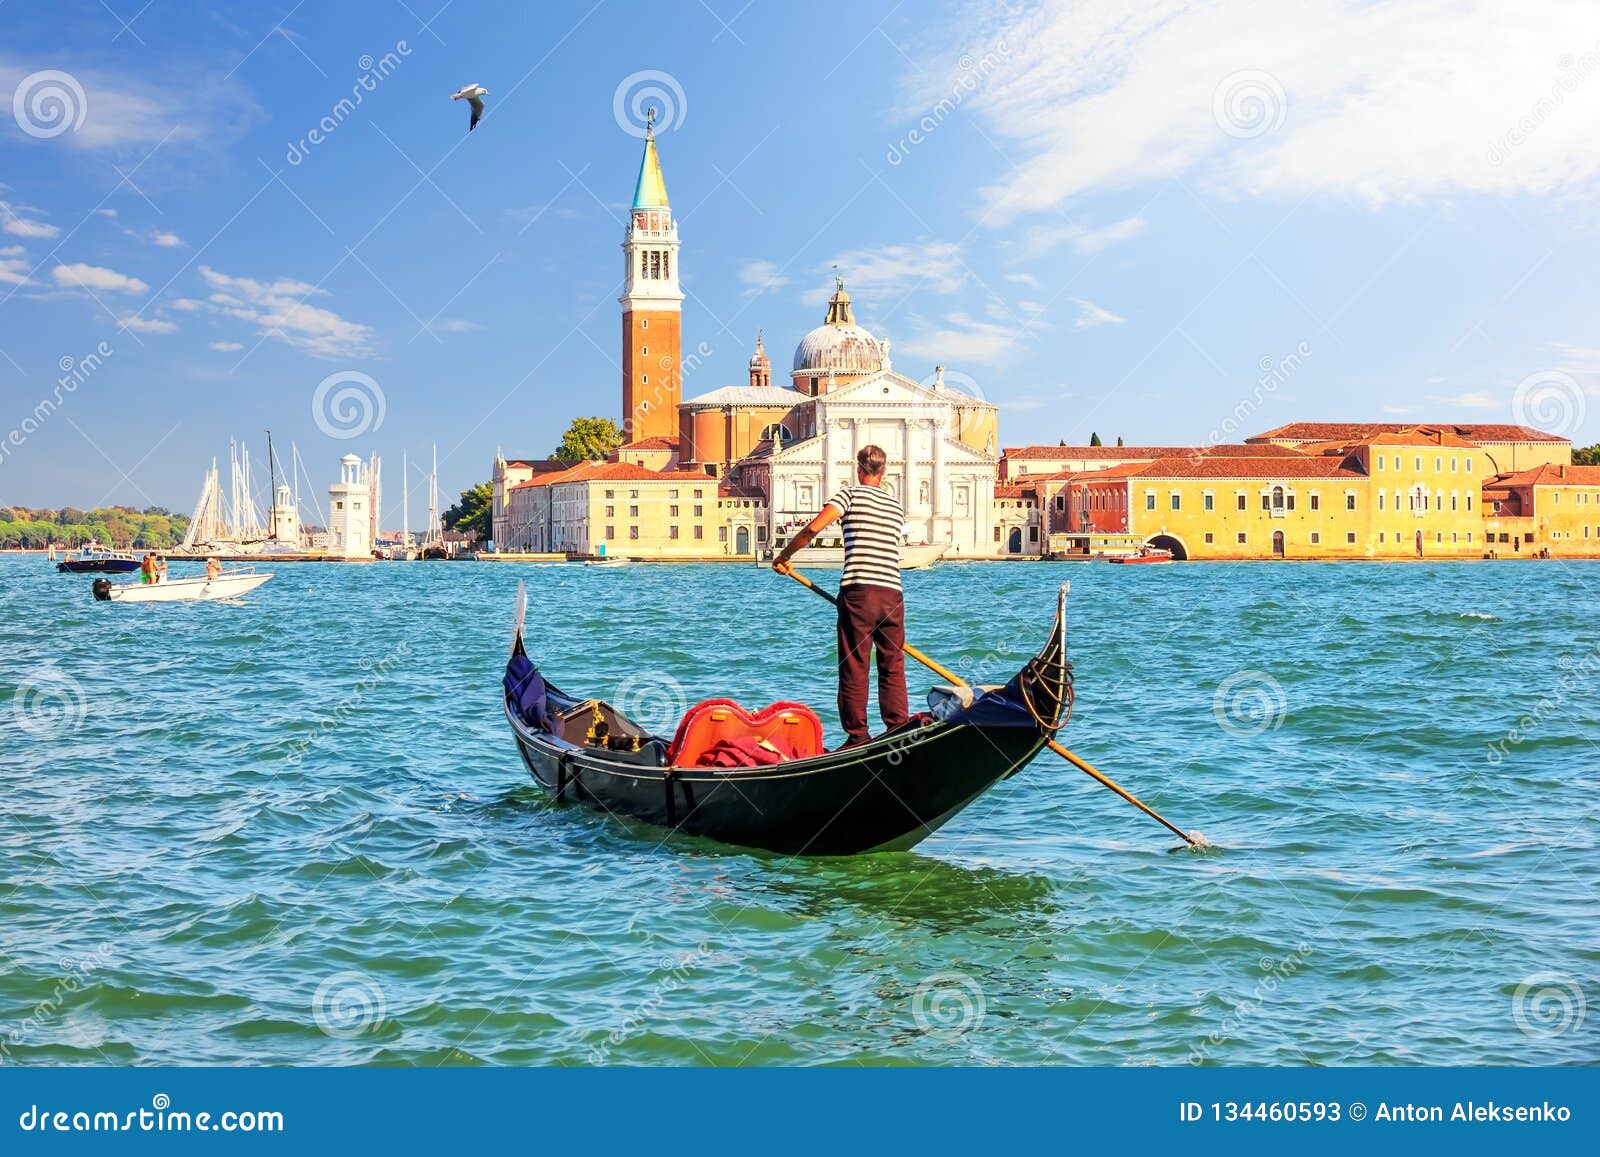 san giorgio maggiore island of venice and a traditional gondolier in his gondola